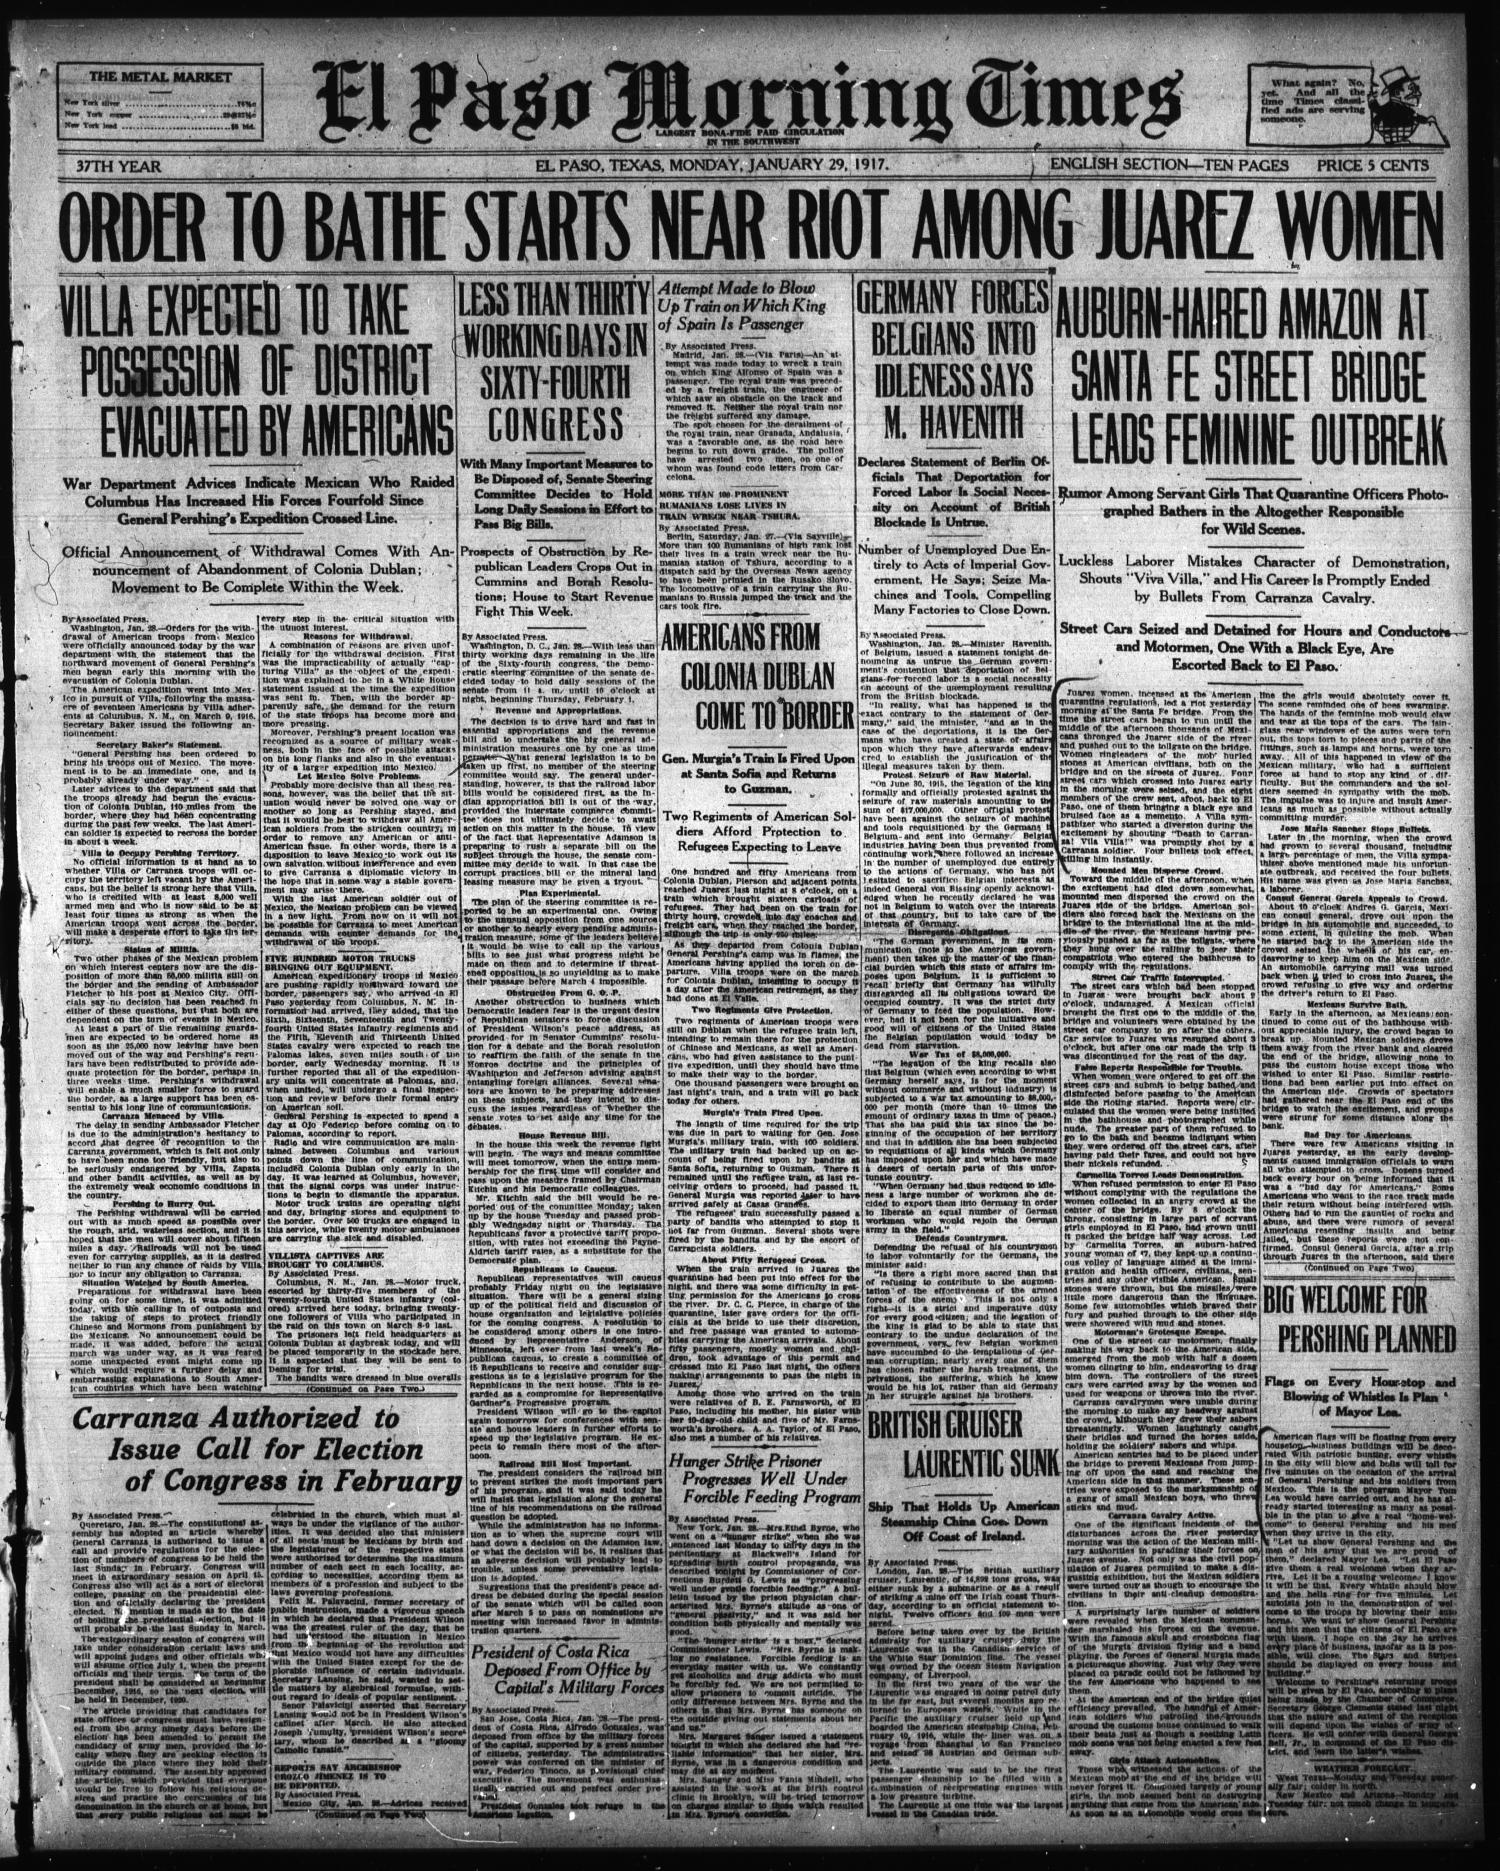 El Paso Herald (El Paso, Tex.), Ed. 1, Monday, April 26, 1920